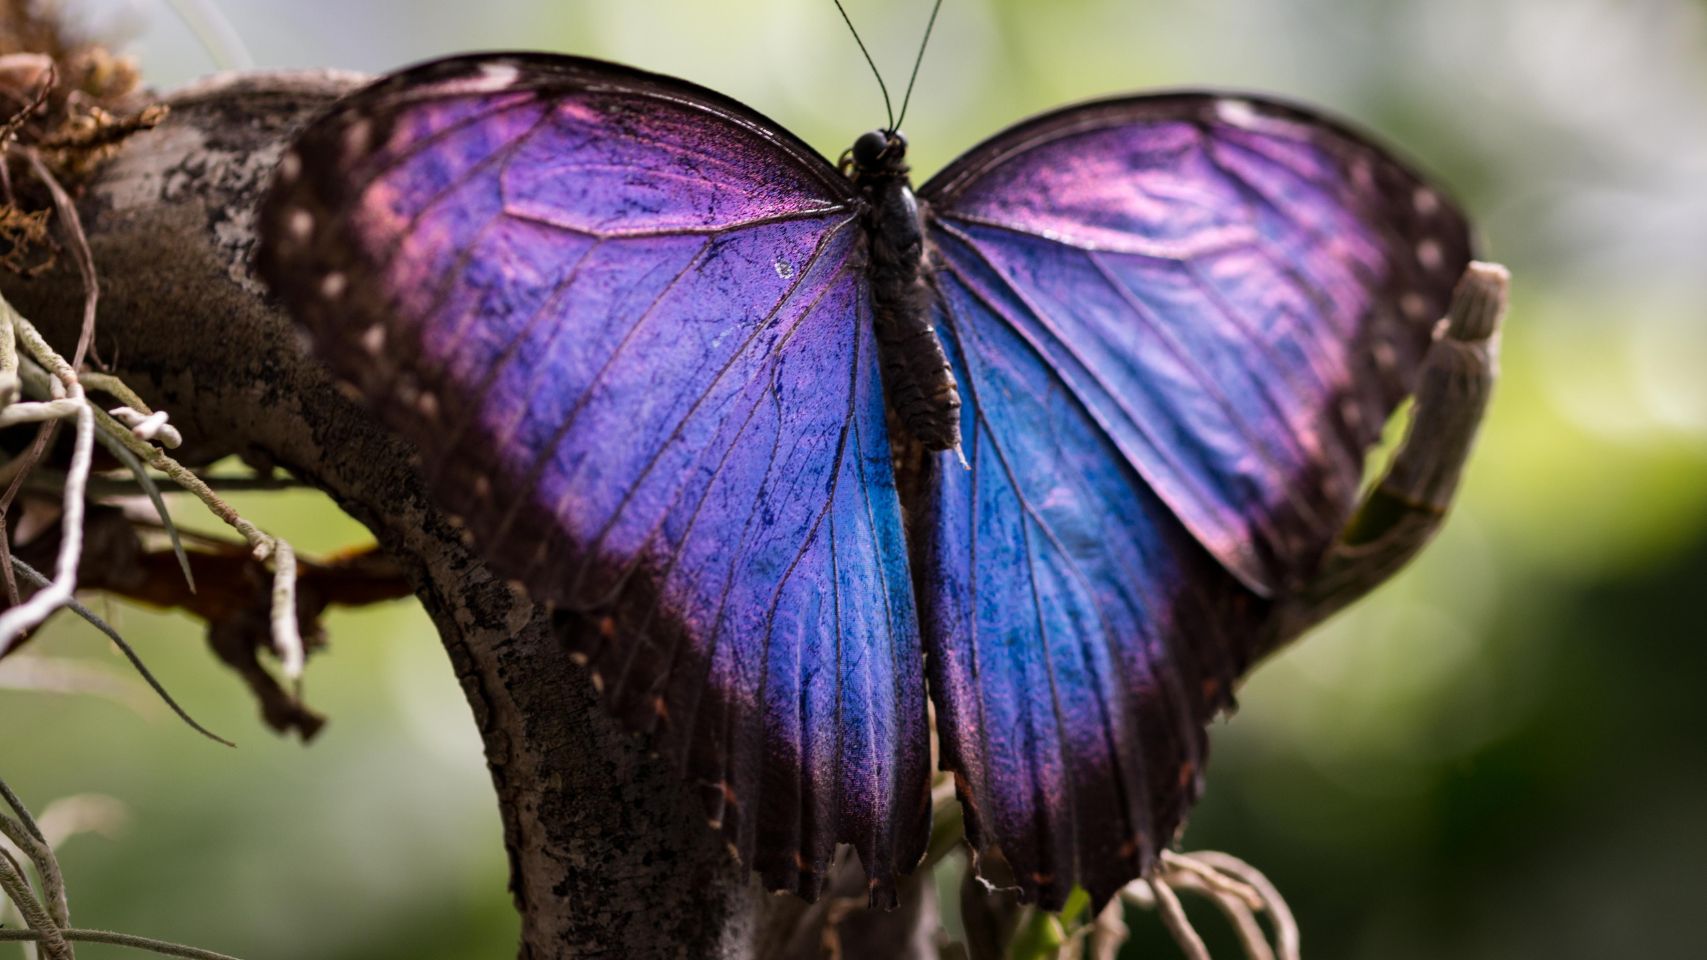 purple butterfly